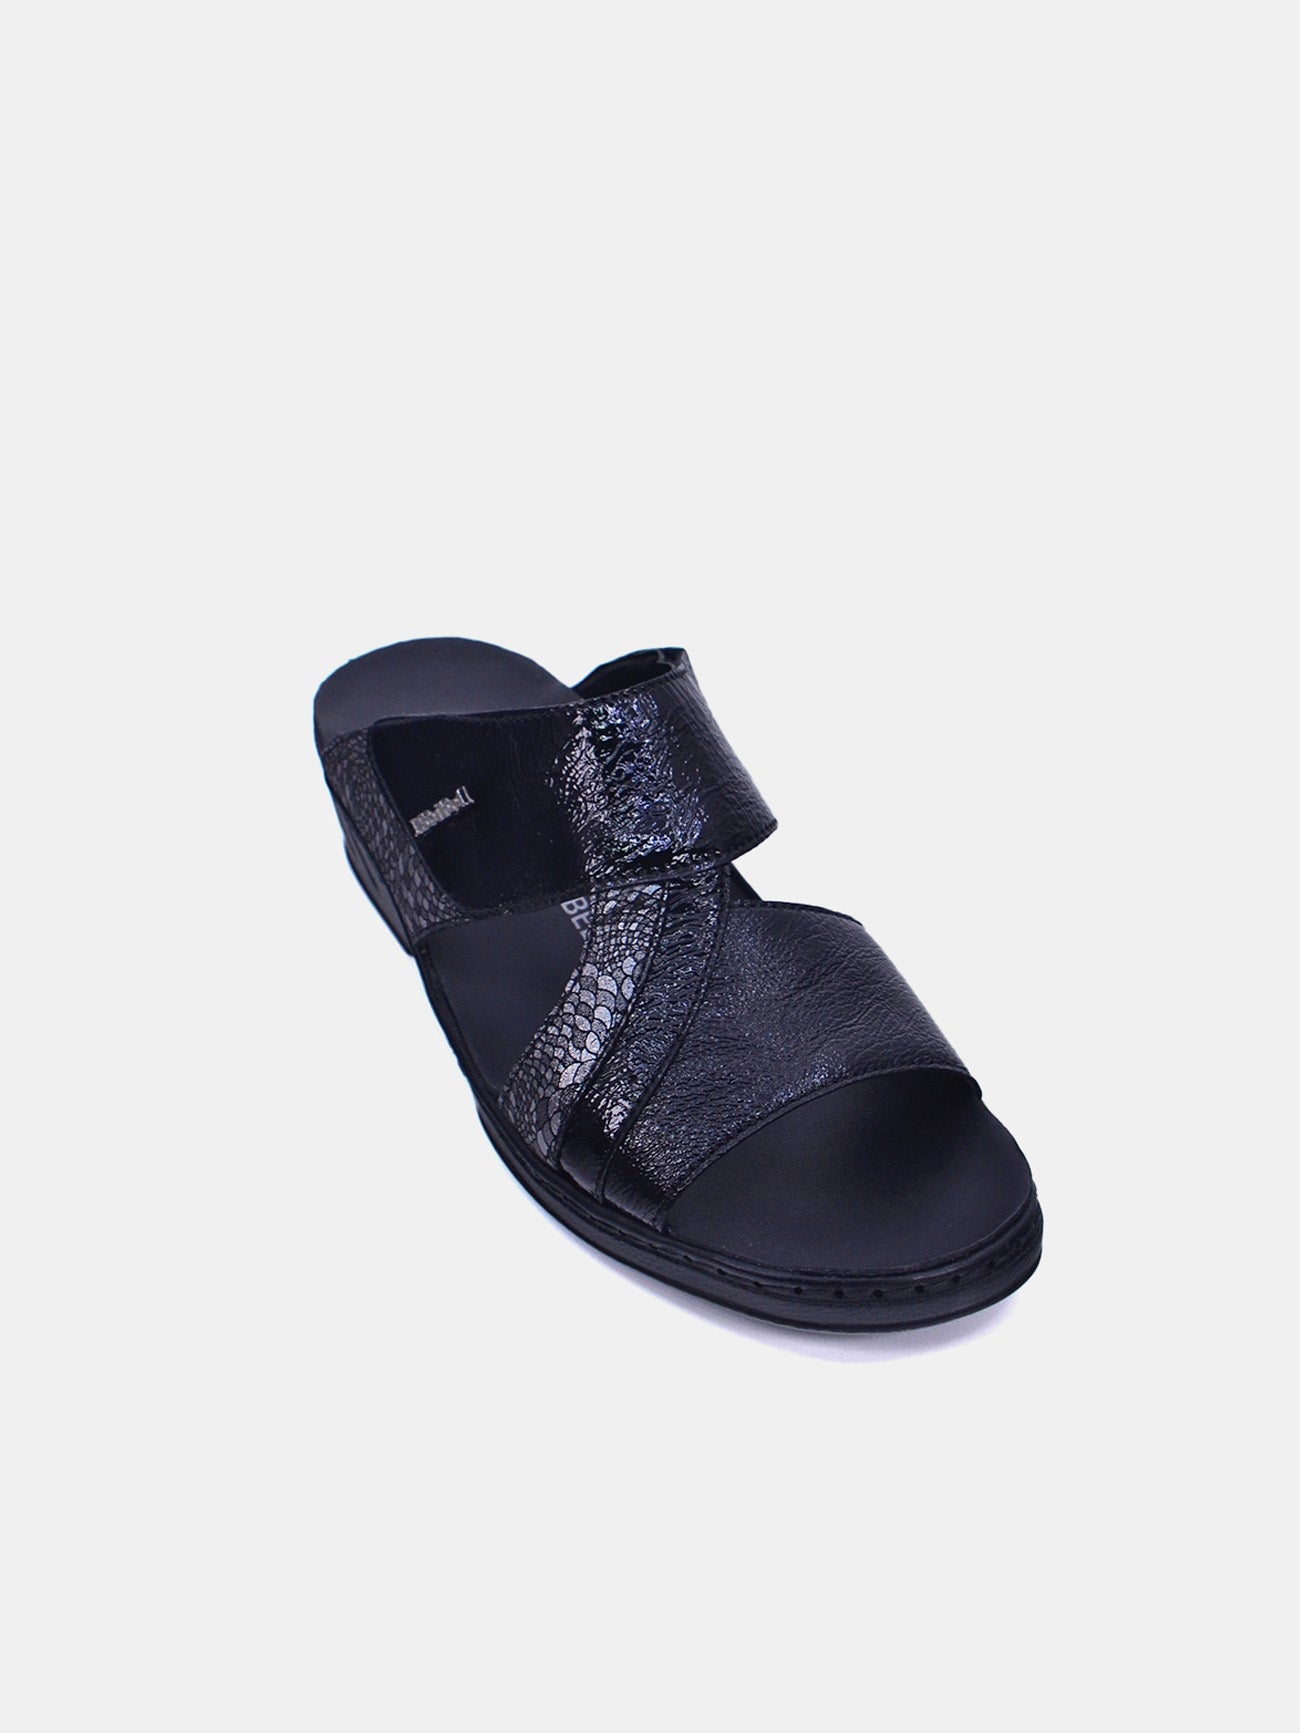 Josef Seibel 08824 Women's Sandals #color_Grey